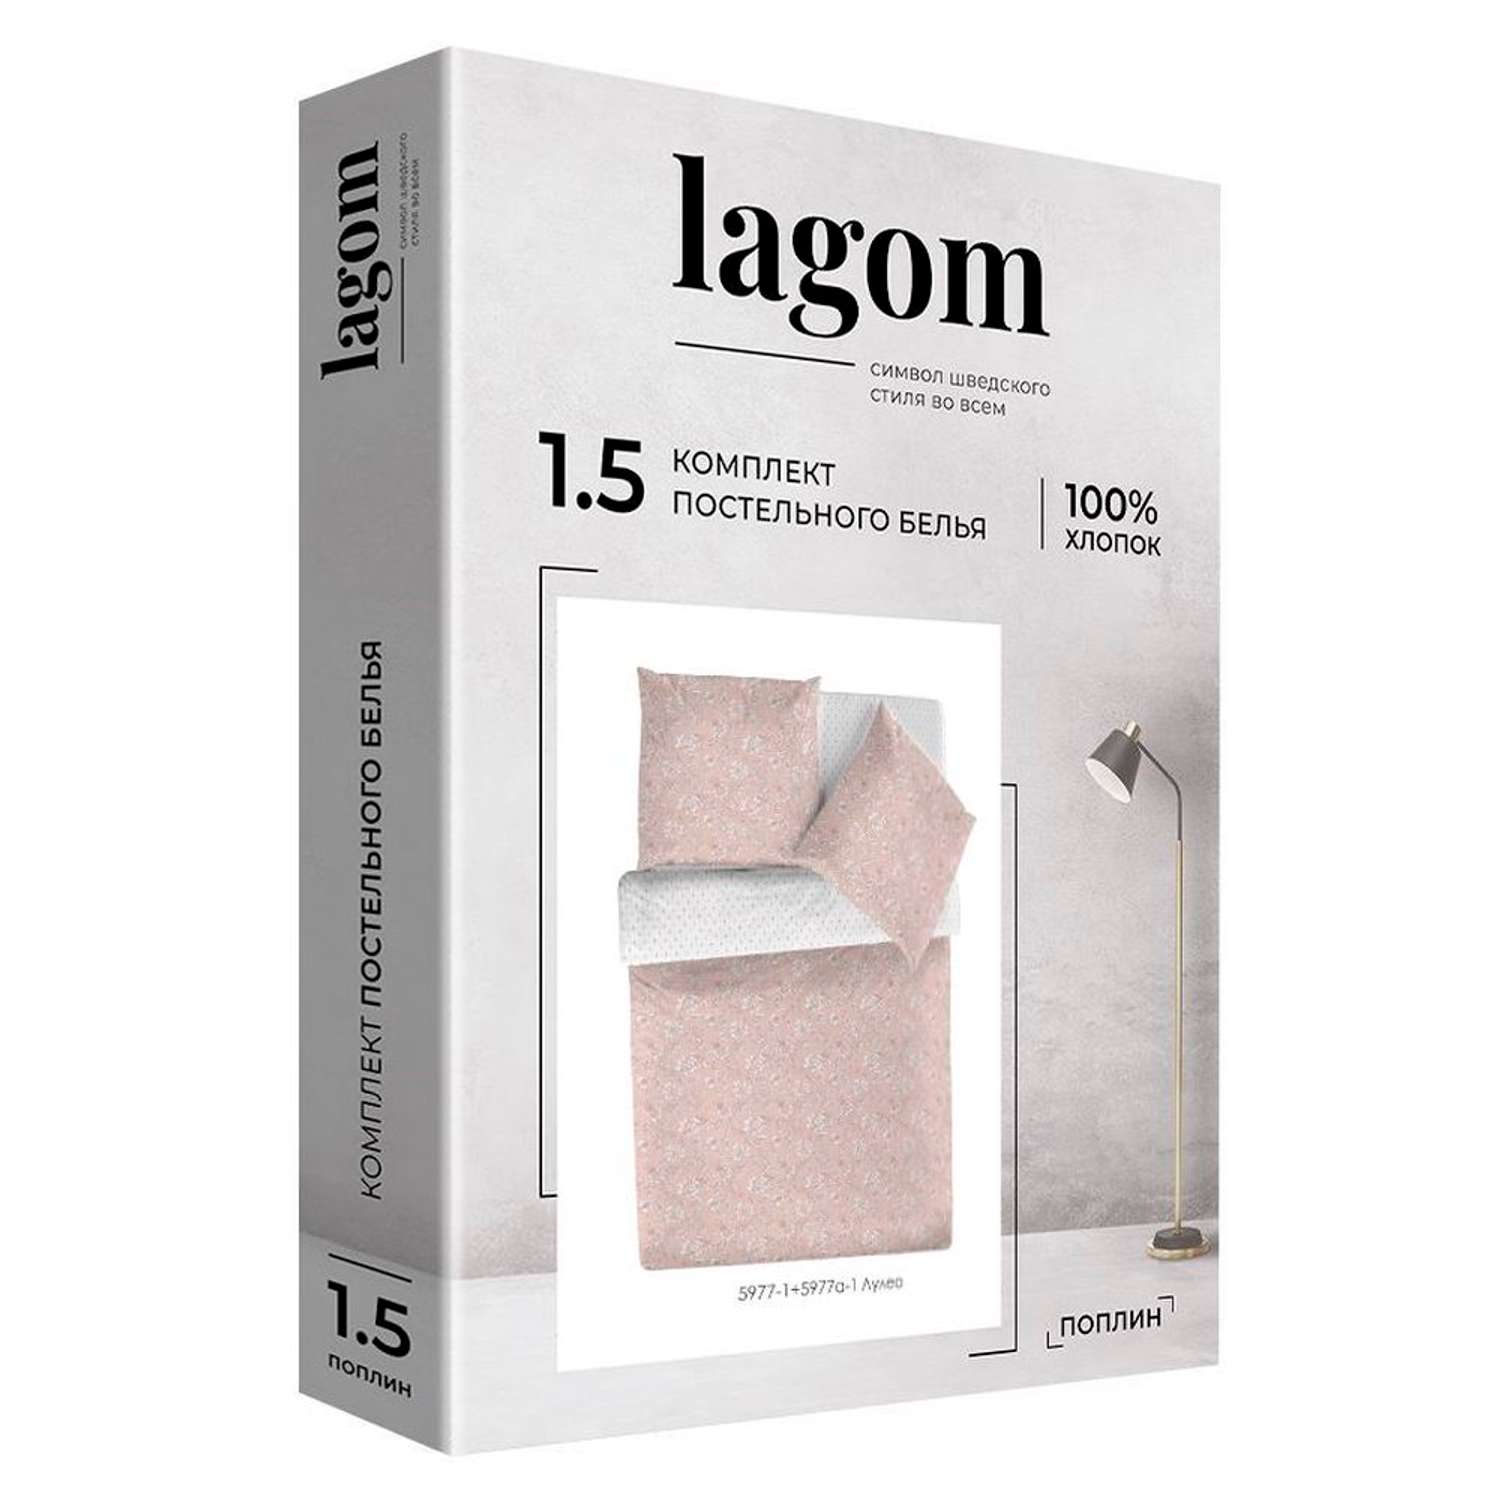 Комплект постельного белья lagom Лулео 1.5-спальный наволочки 70х70 рис.5977-1+5977а-1 - фото 9